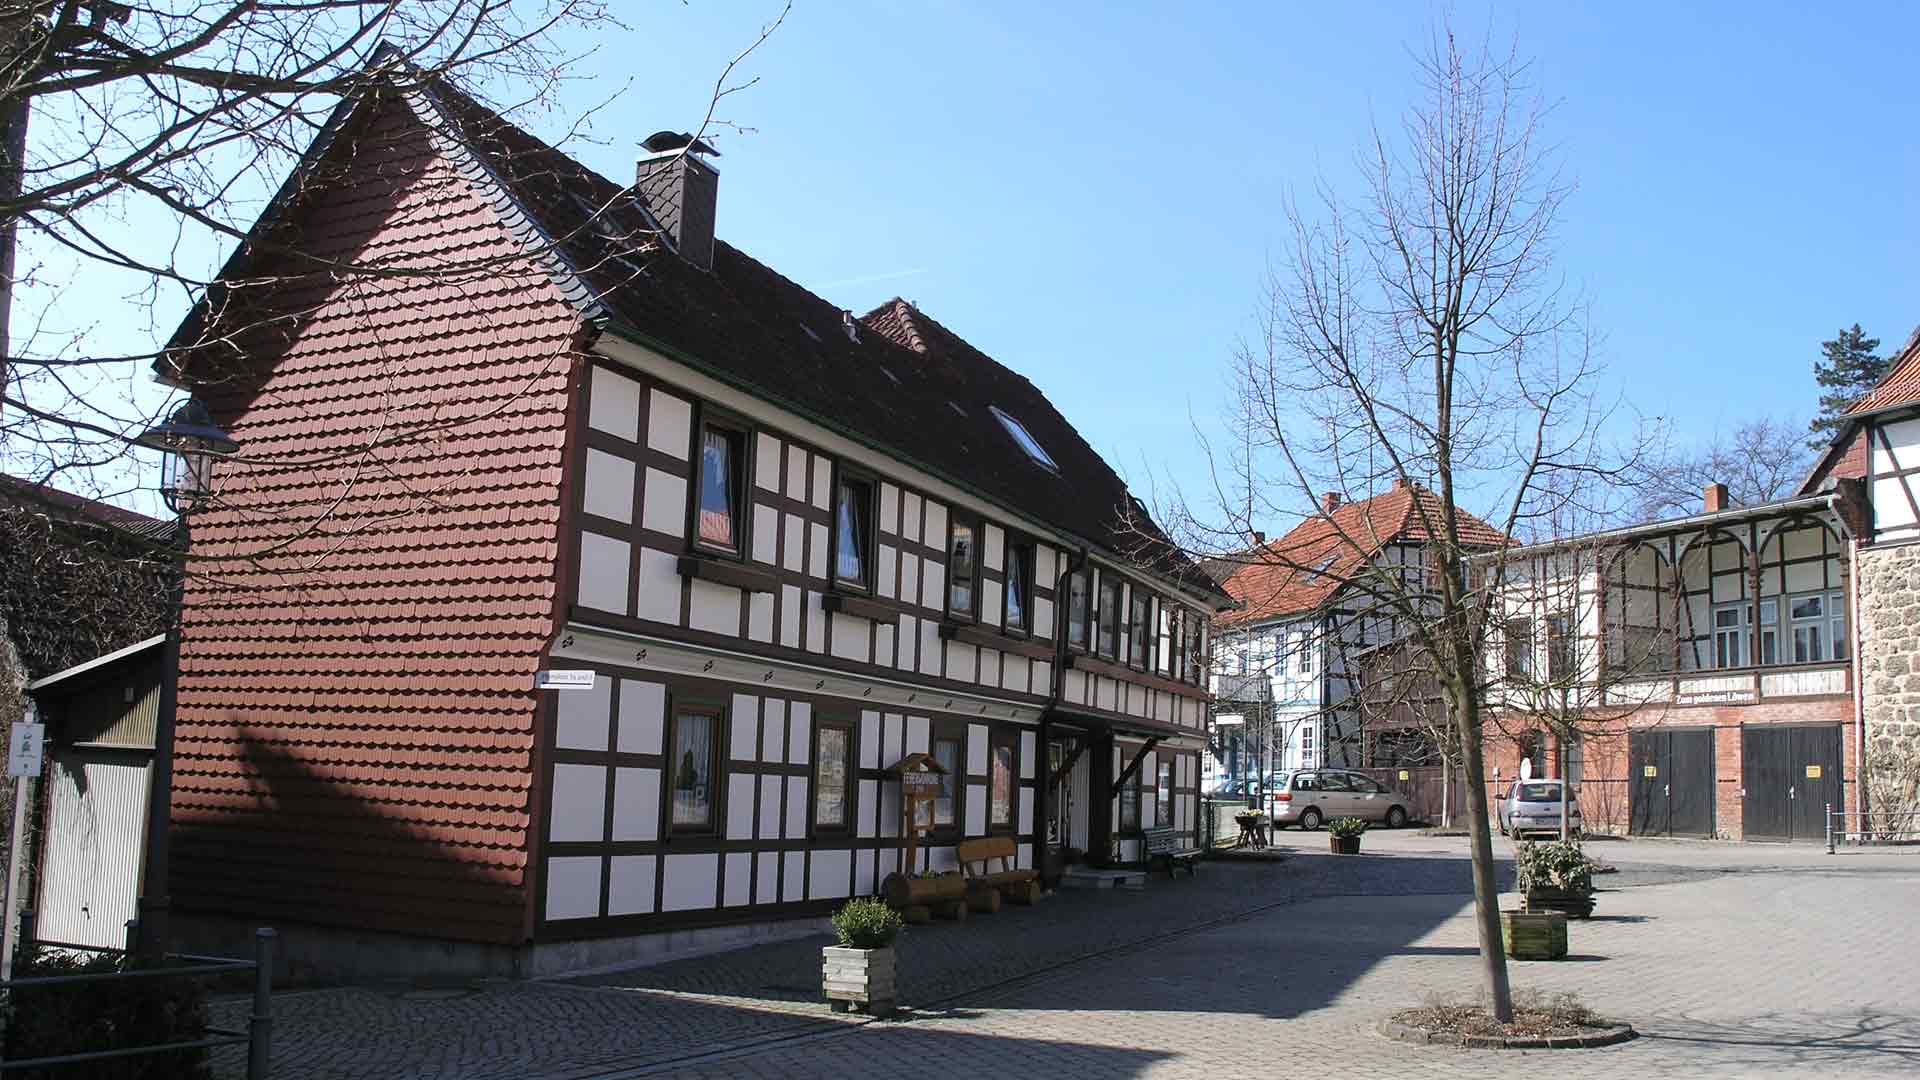 Walkenried - Altes Fachwerkhaus am Platz